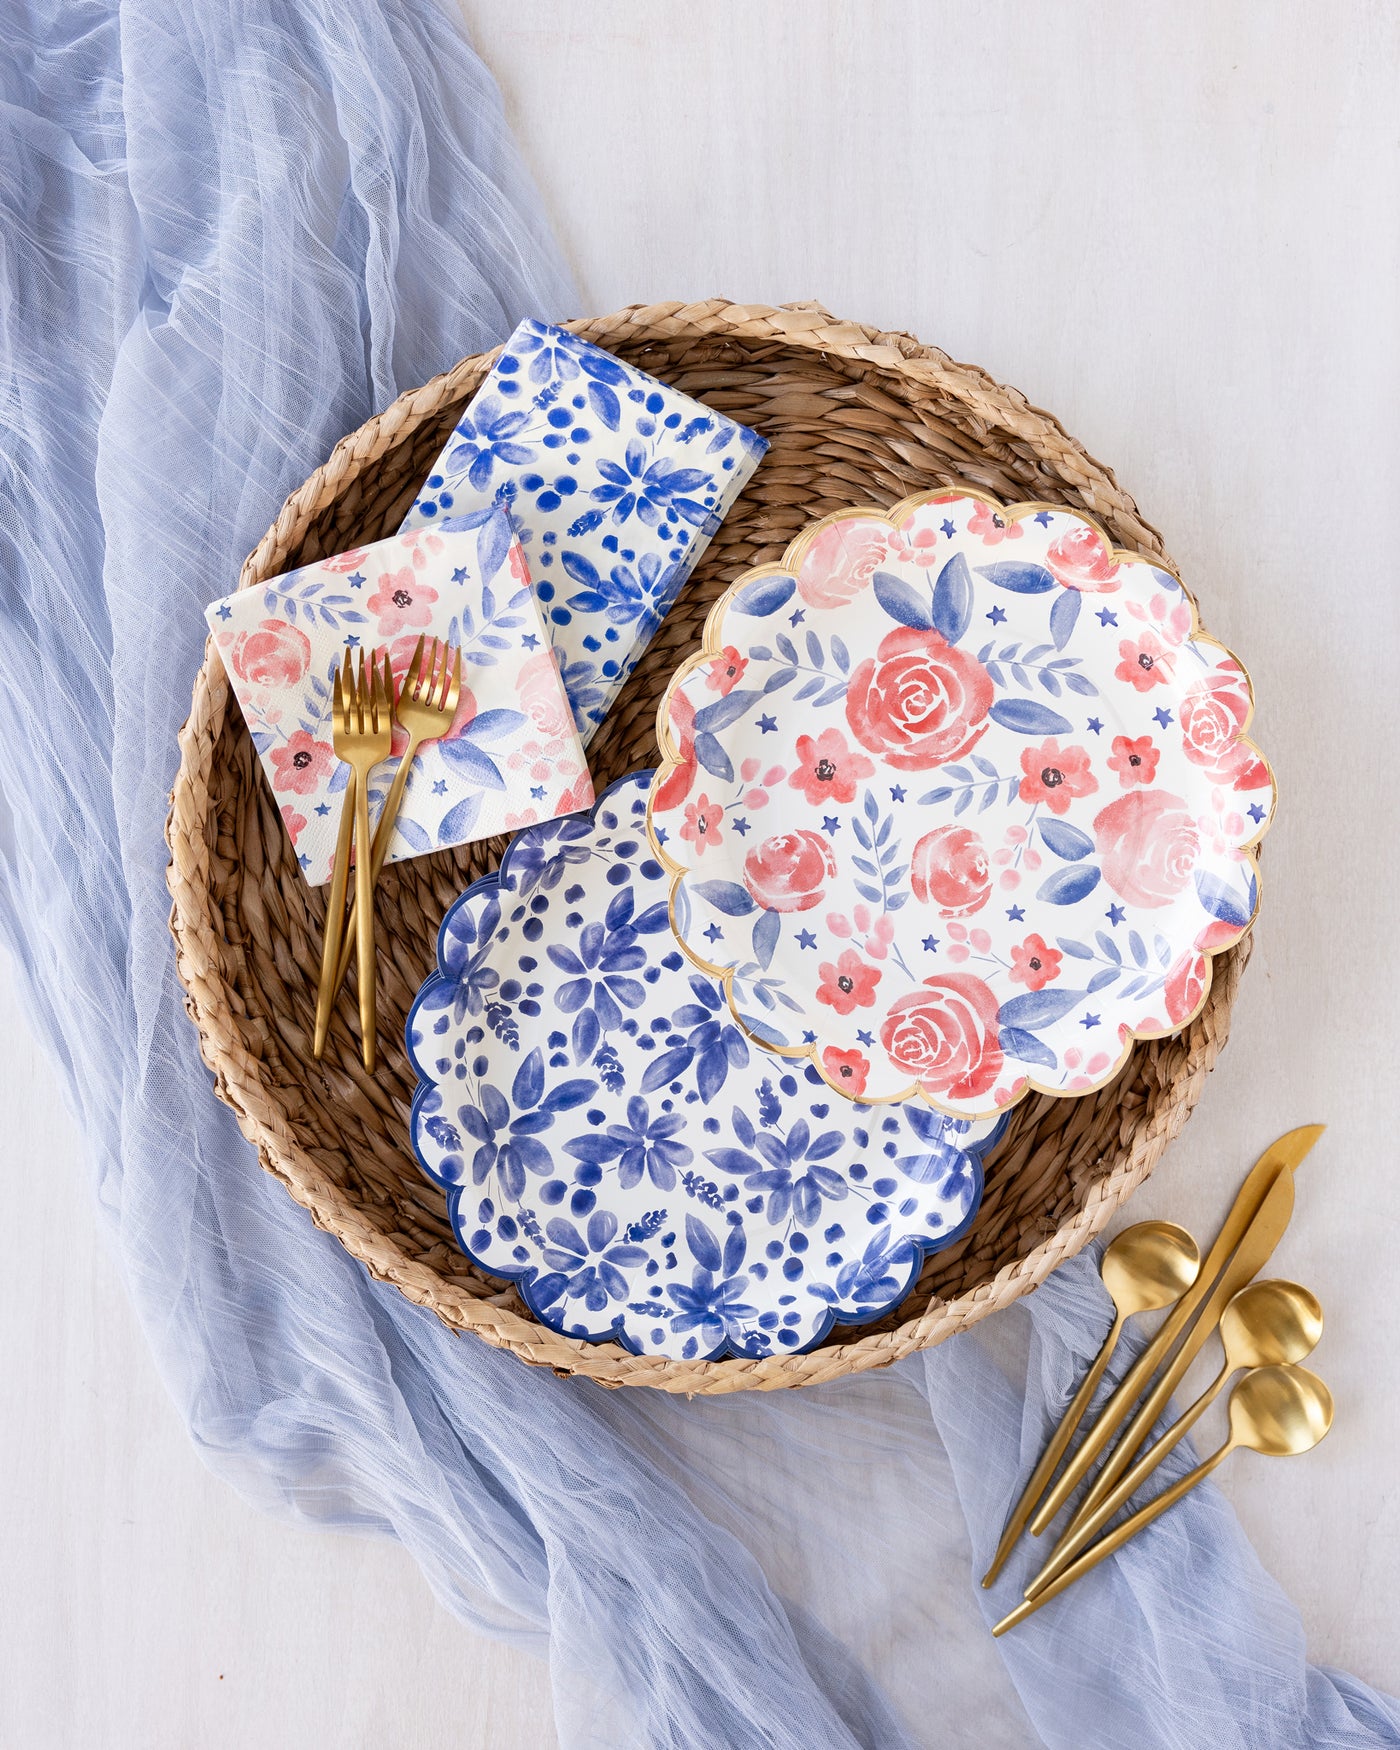 PLNP356 - Blue Scallop Floral Paper Guest Napkin